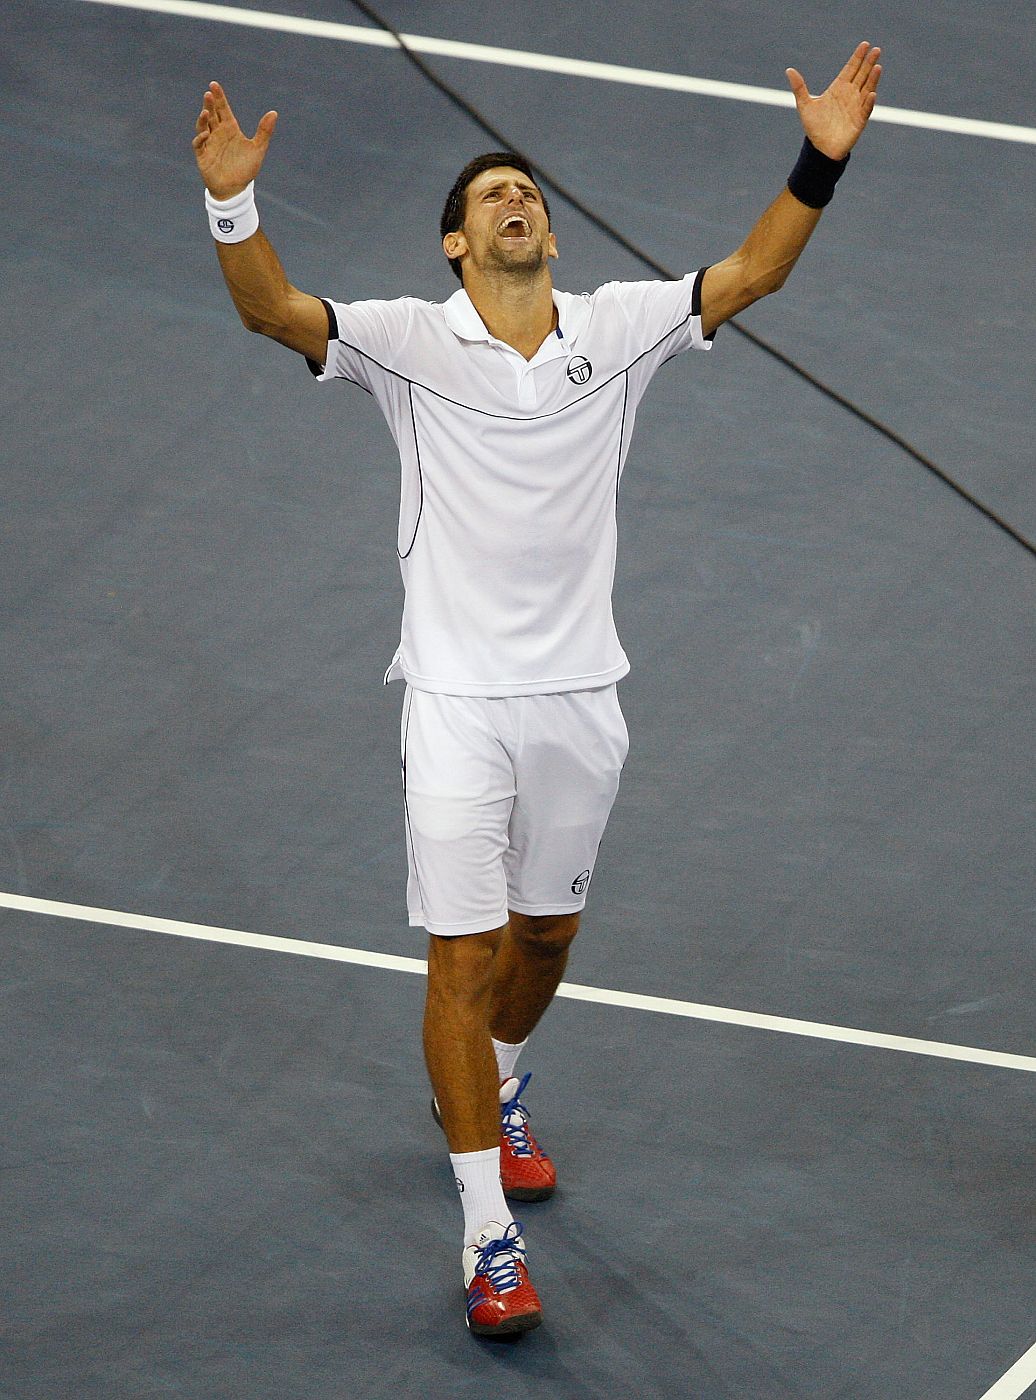 El actual número 1 del mundo, Novak Djokovic, celebra el US Open 2011 logrado ante Nadal.